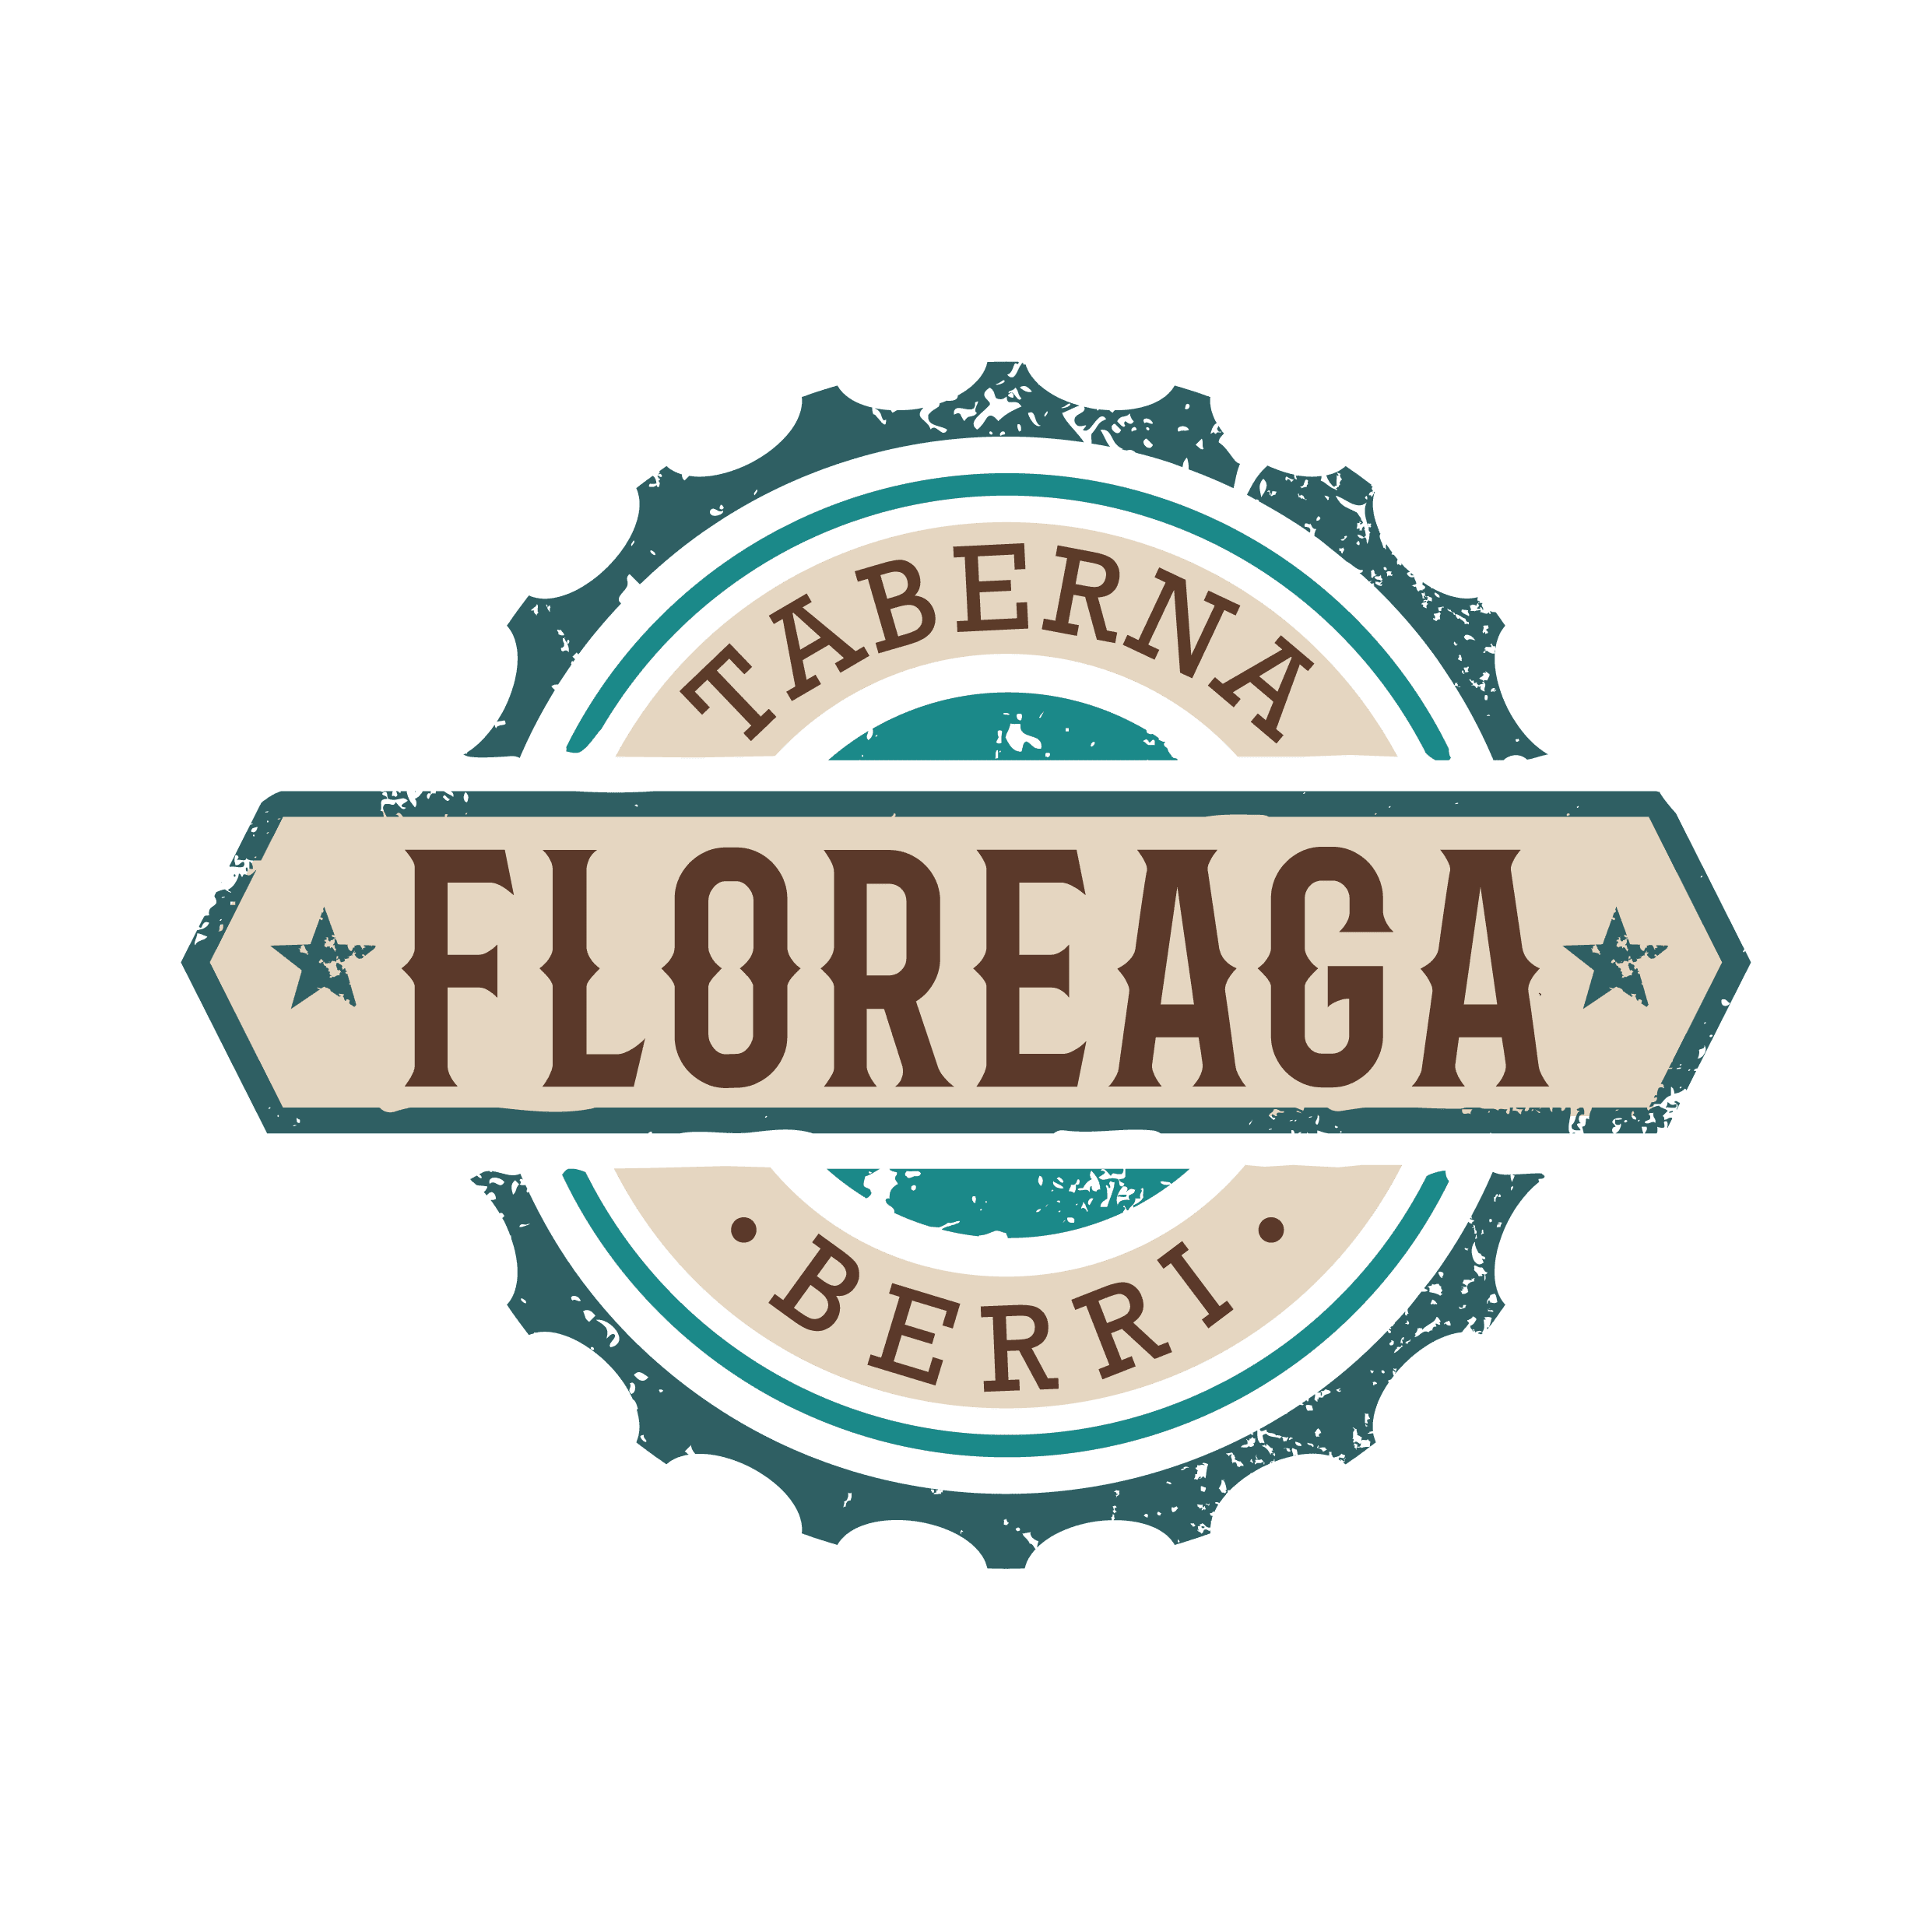 Floreagaberri